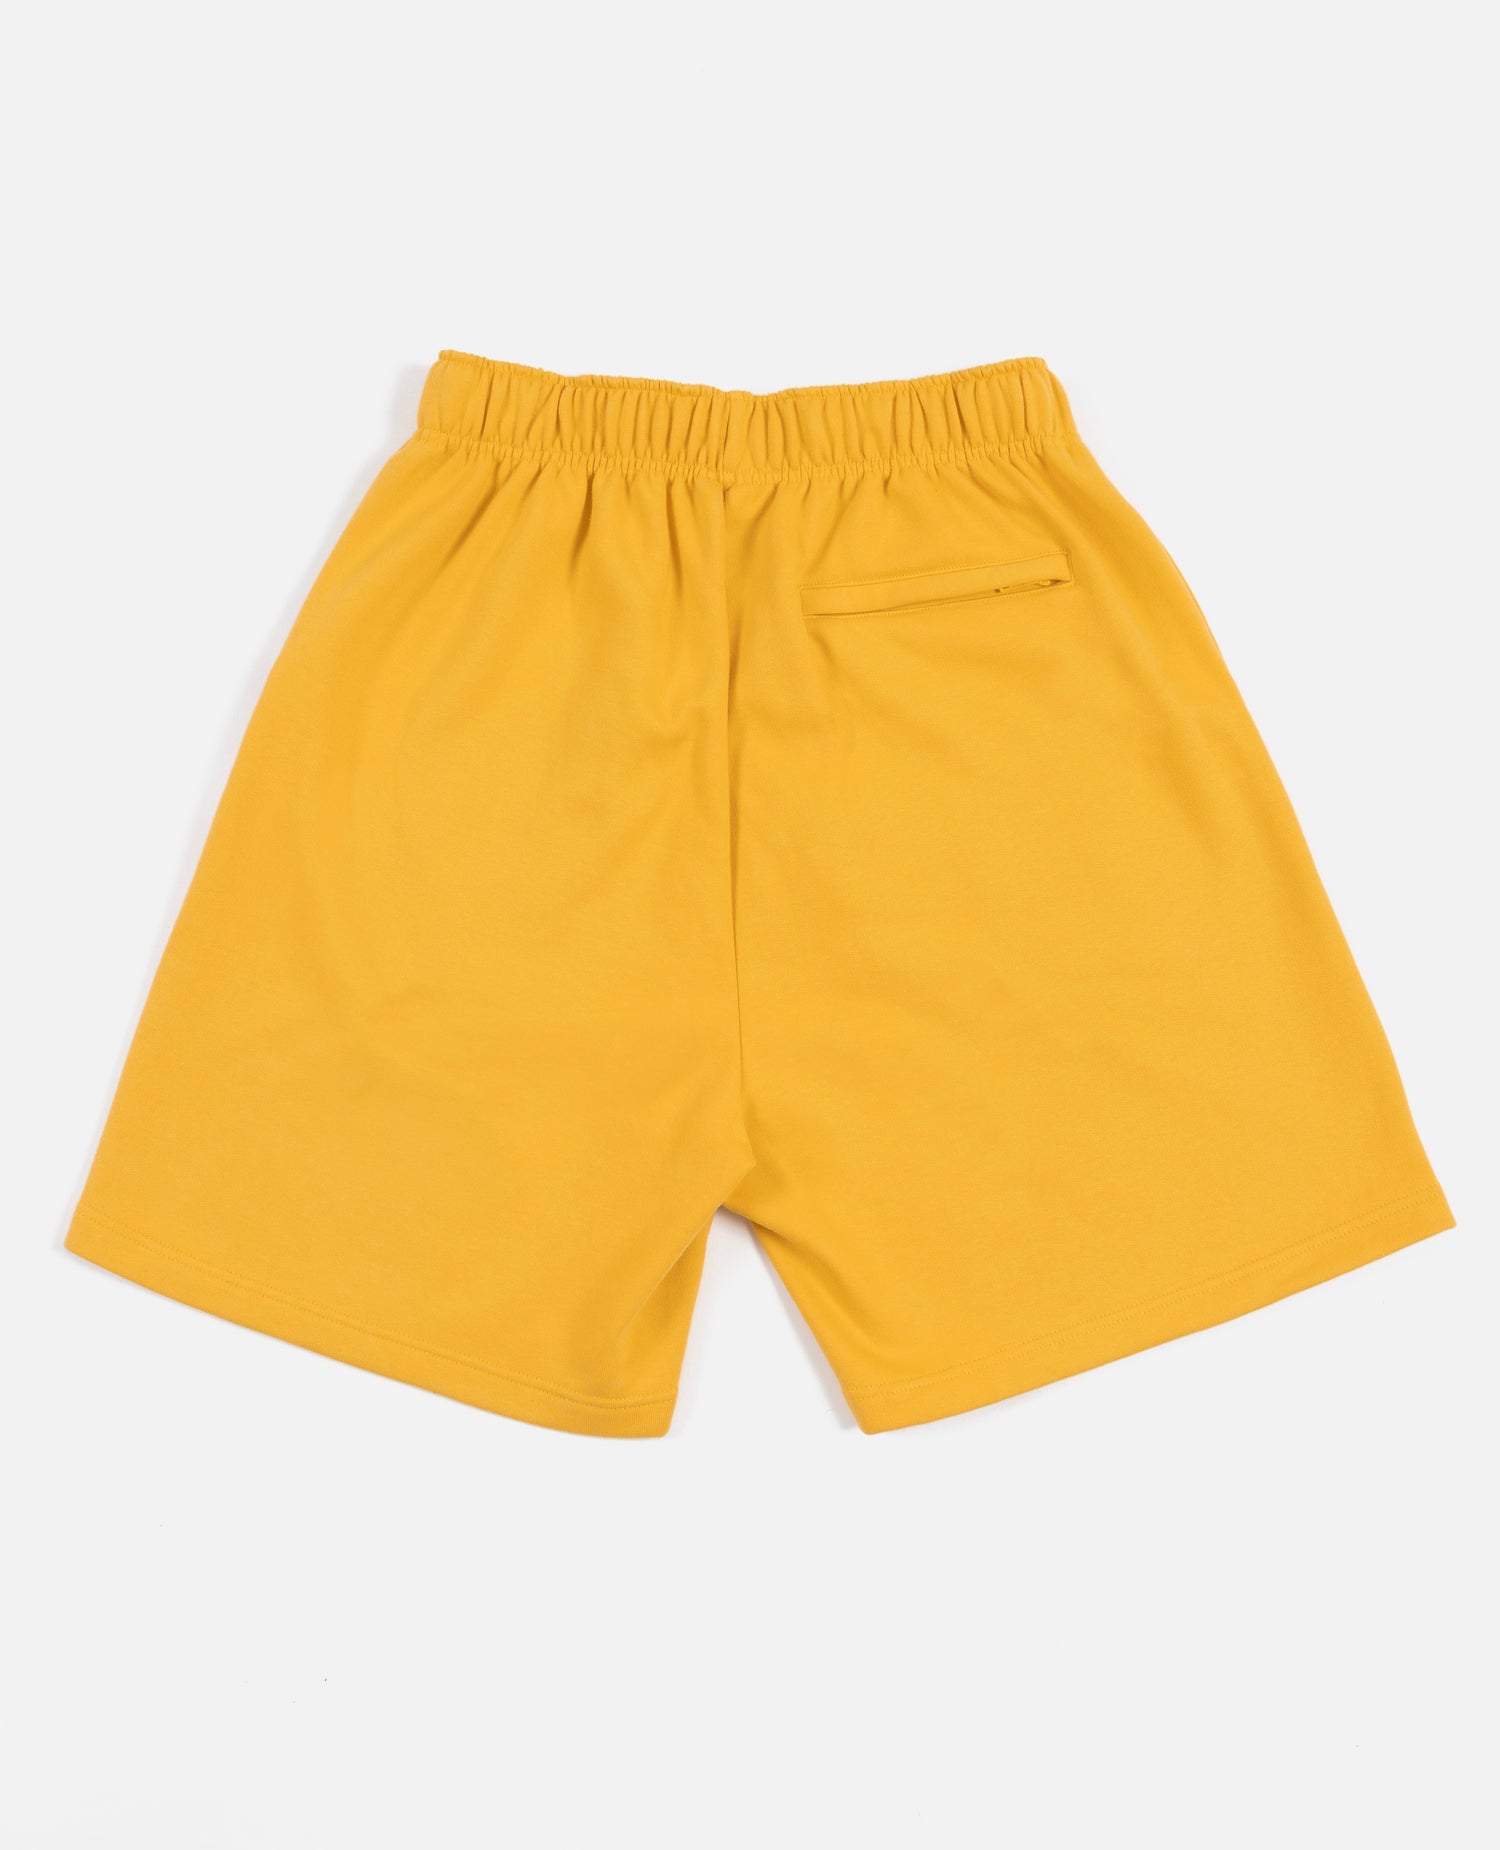 Patta Basic Jogging Shorts (Yolk Yellow)